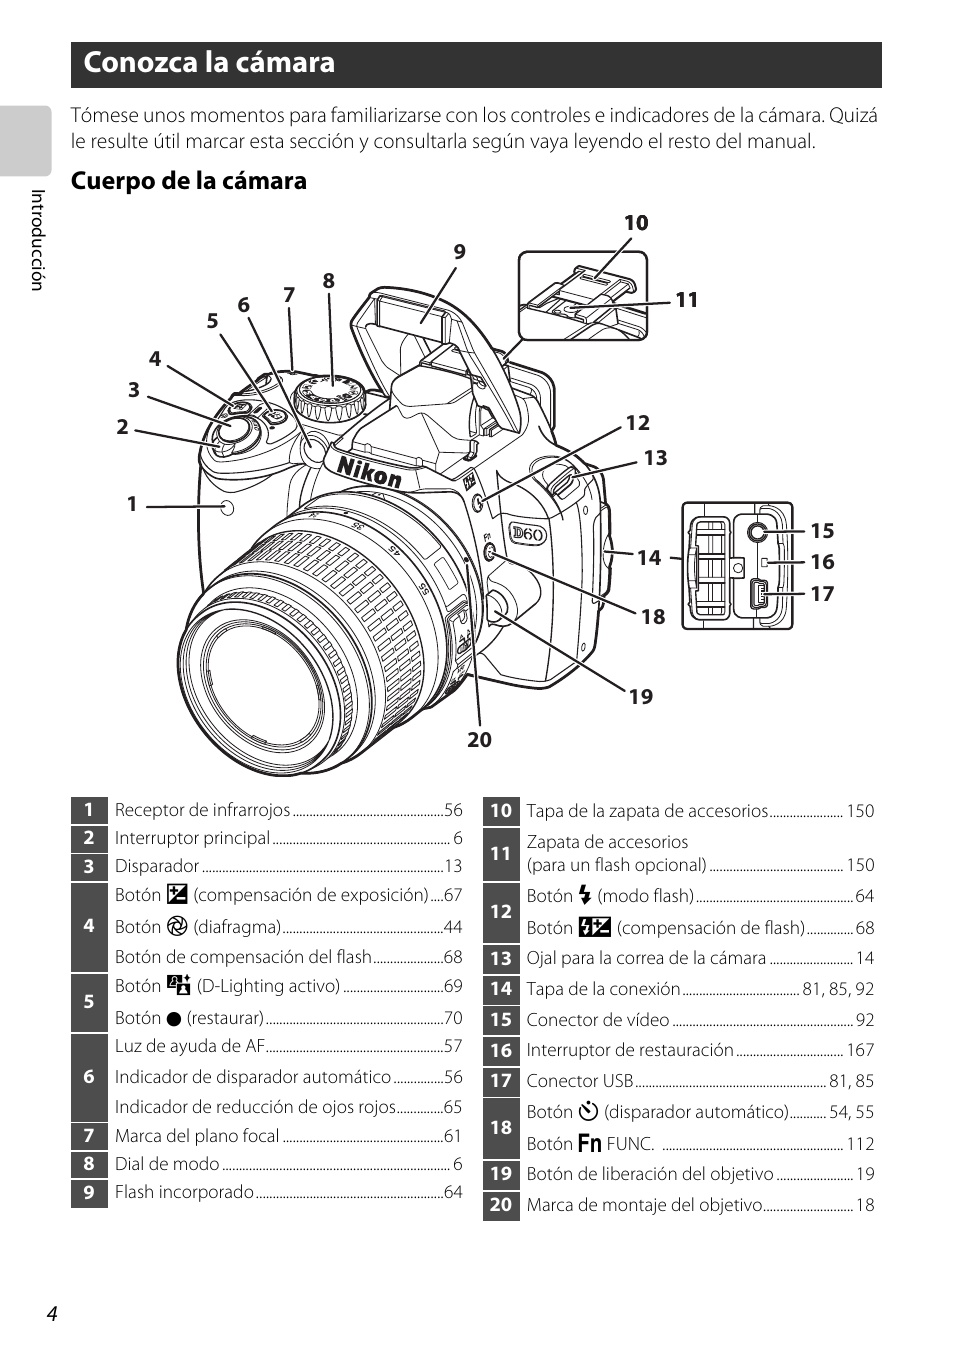 Conozca la cámara, Cuerpo de la cámara | Nikon D60 Manual del usuario | Página 16 / 204